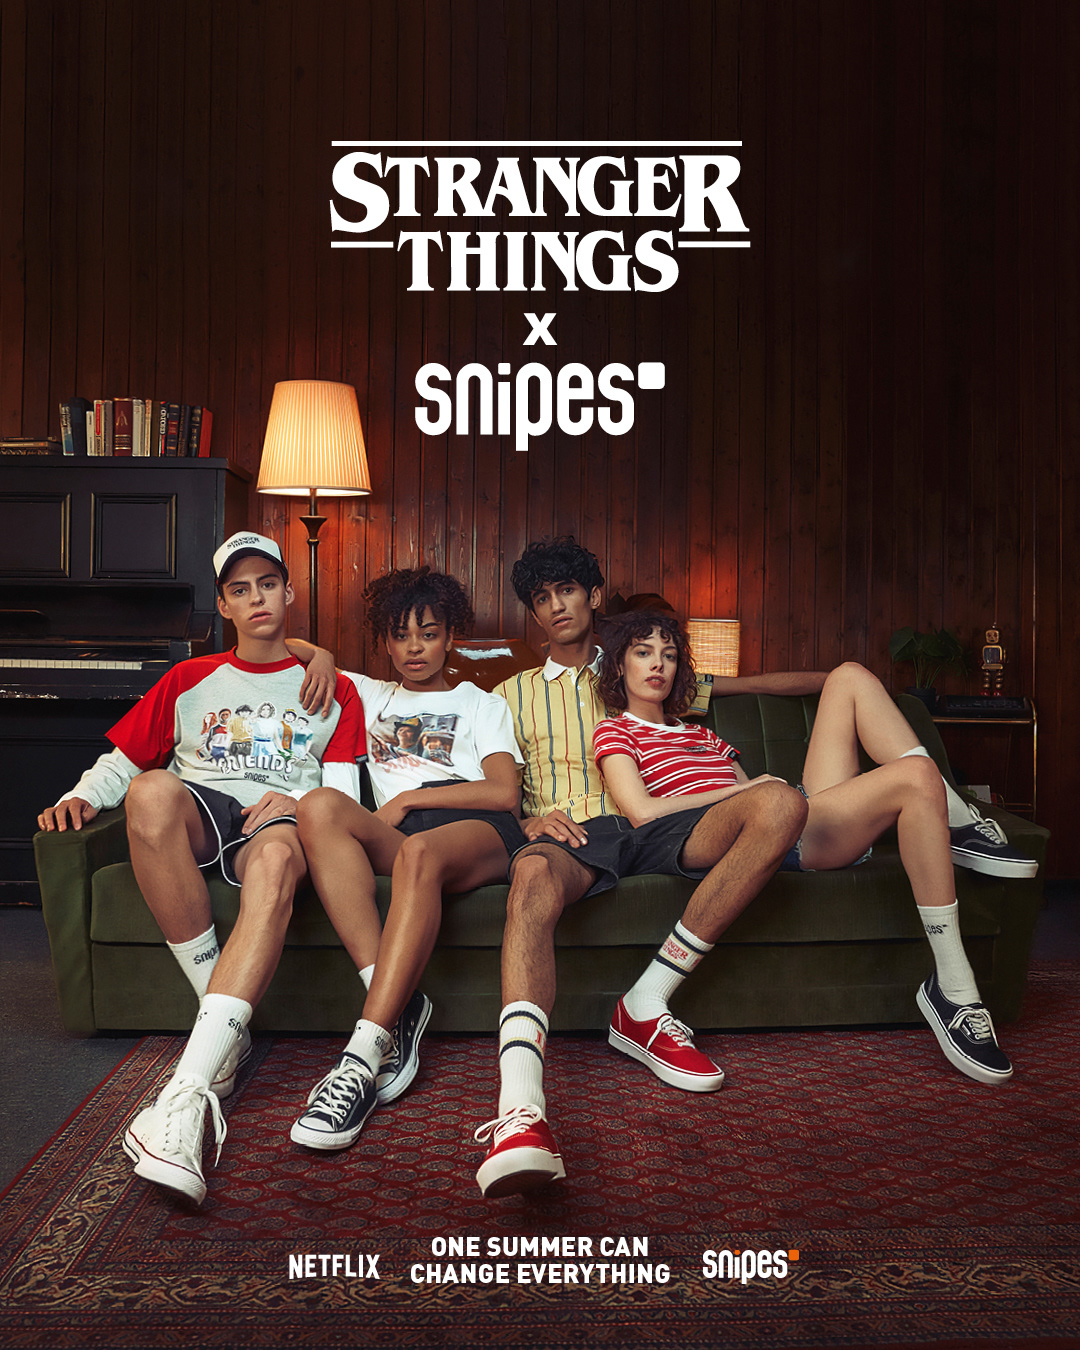 StrangerThings Snipes stranger things strangerThings3 Netflix Advertising  clothes brand series